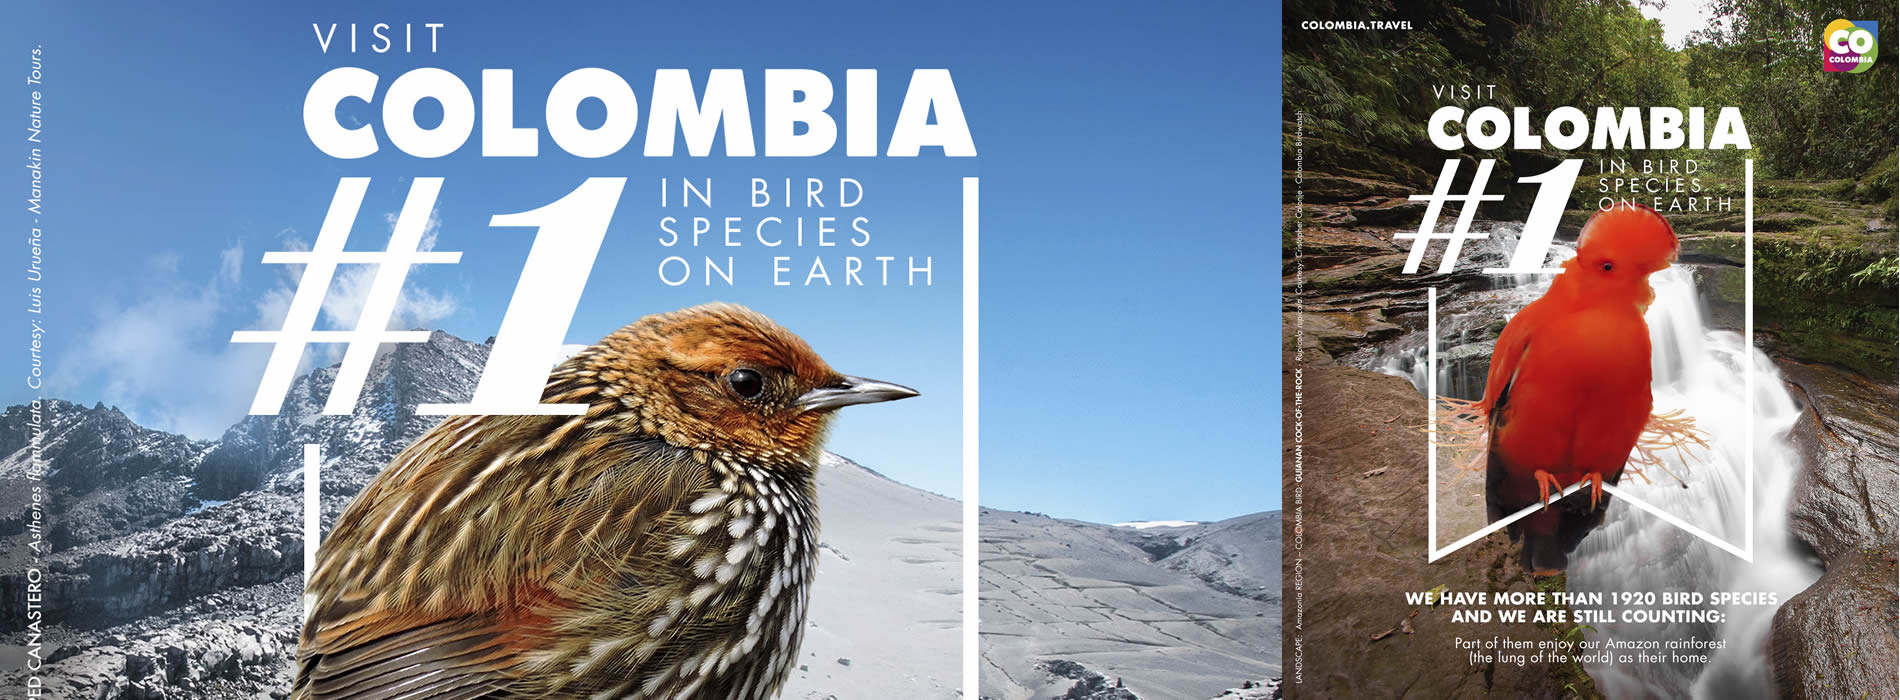 Colombia #1 en especies de aves en el mundo, la nueva campaña para promover el turismo internacional de aves